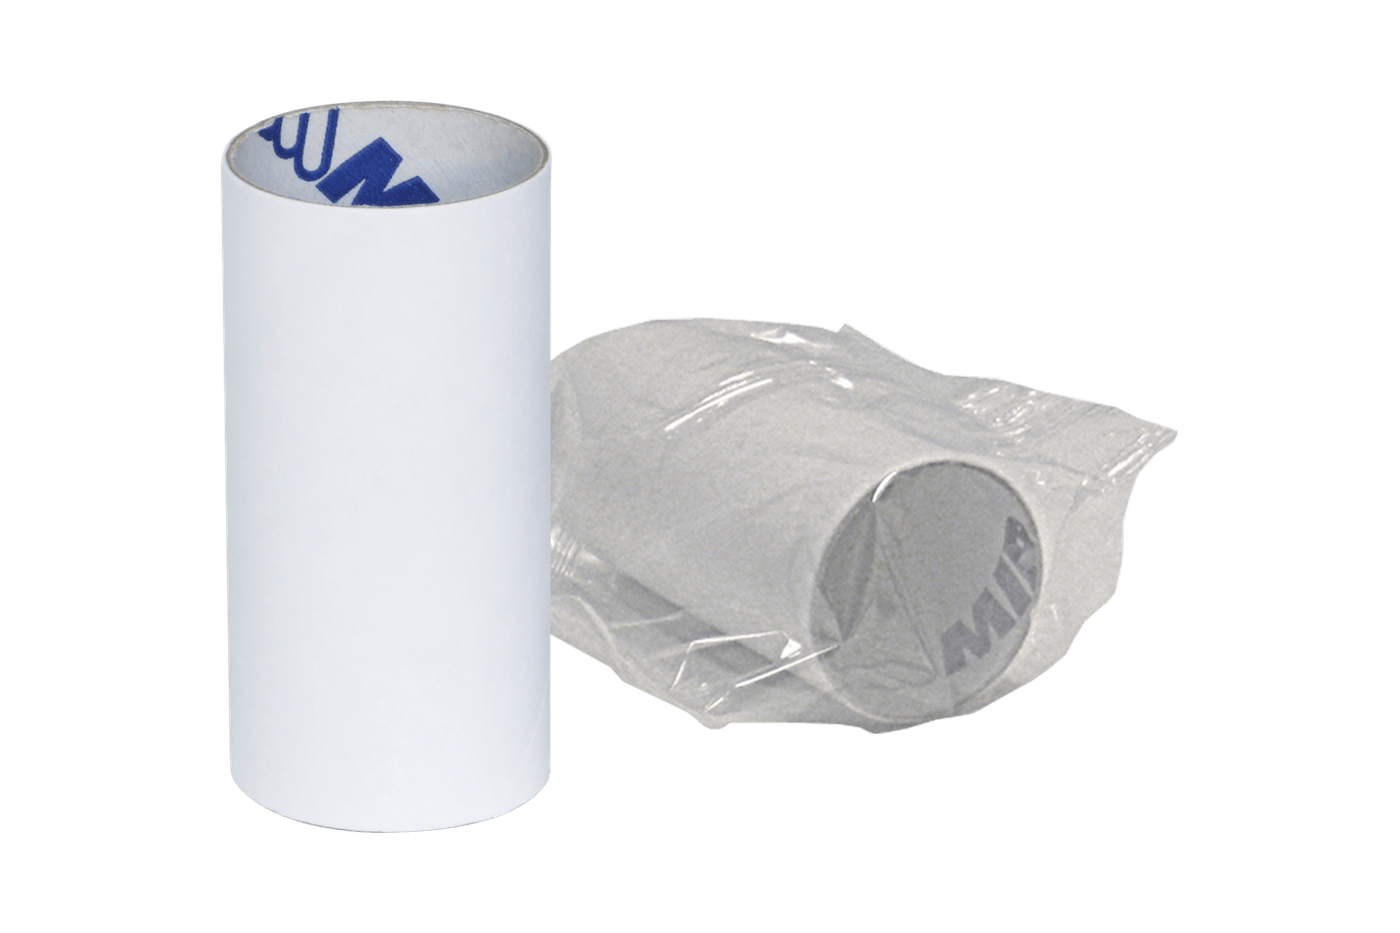 Embout en papier jetable pour adultes pour le débitmètre Purple Turbine de MIR pour la spirométrie.